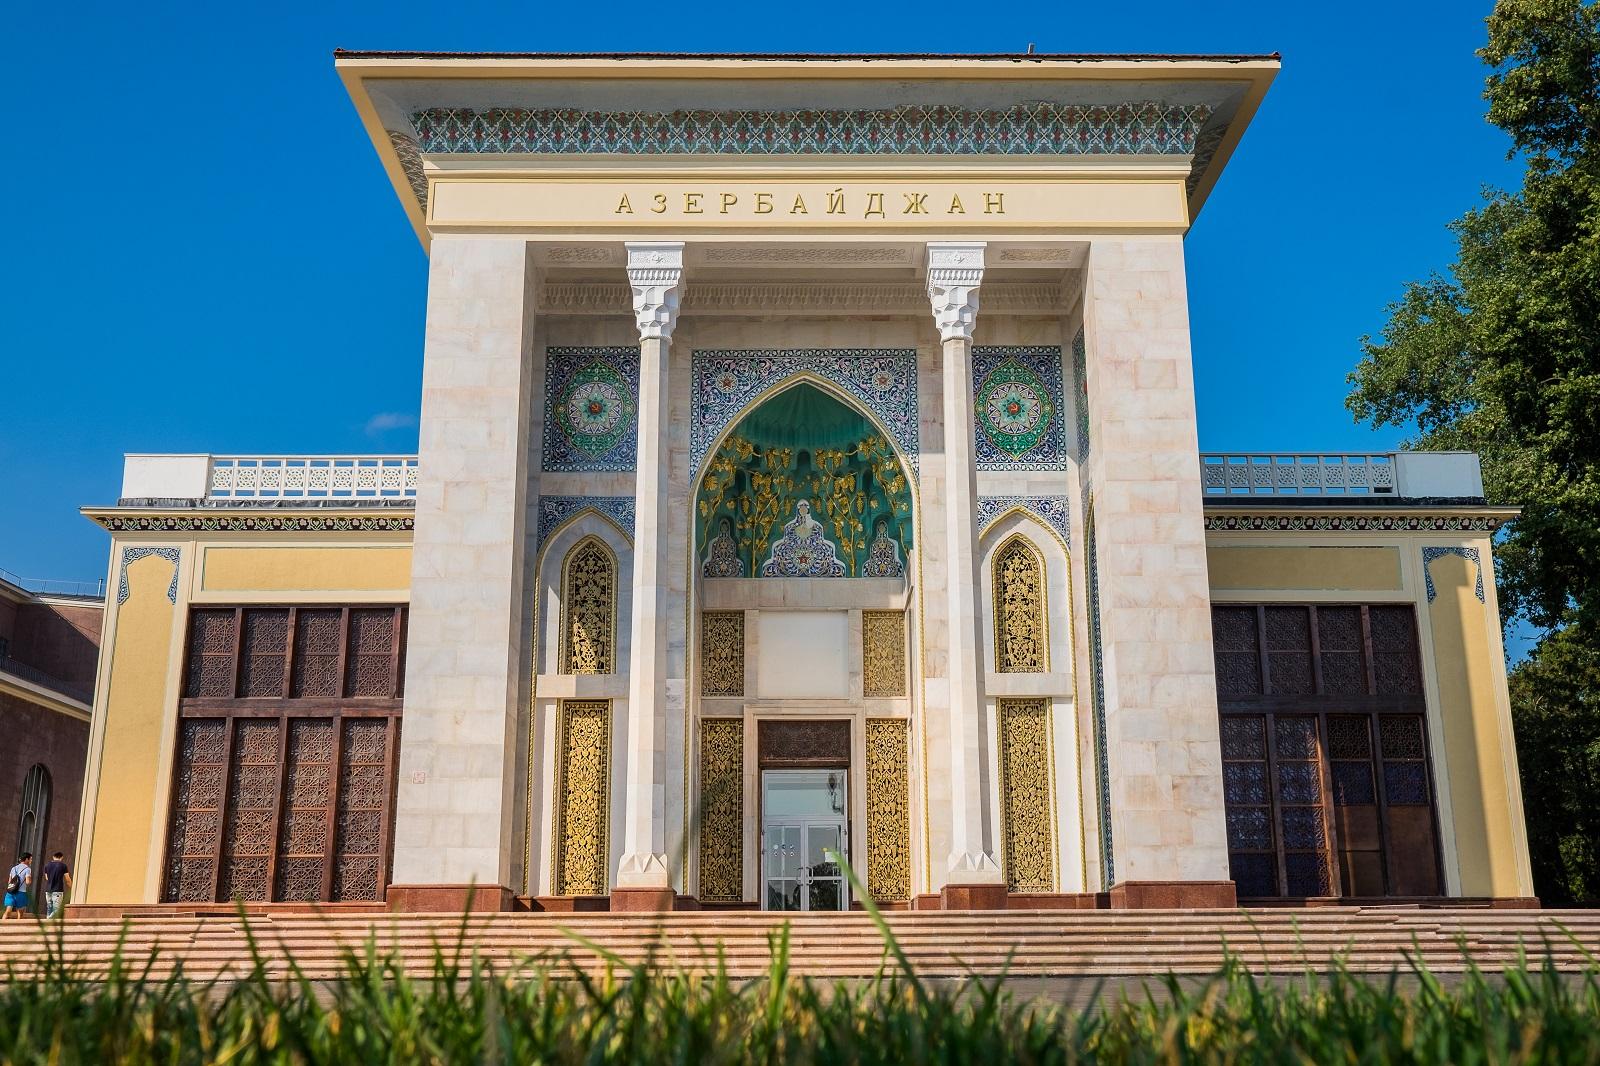 Началась реставрация интерьеров павильона "Азербайджан" на ВДНХ